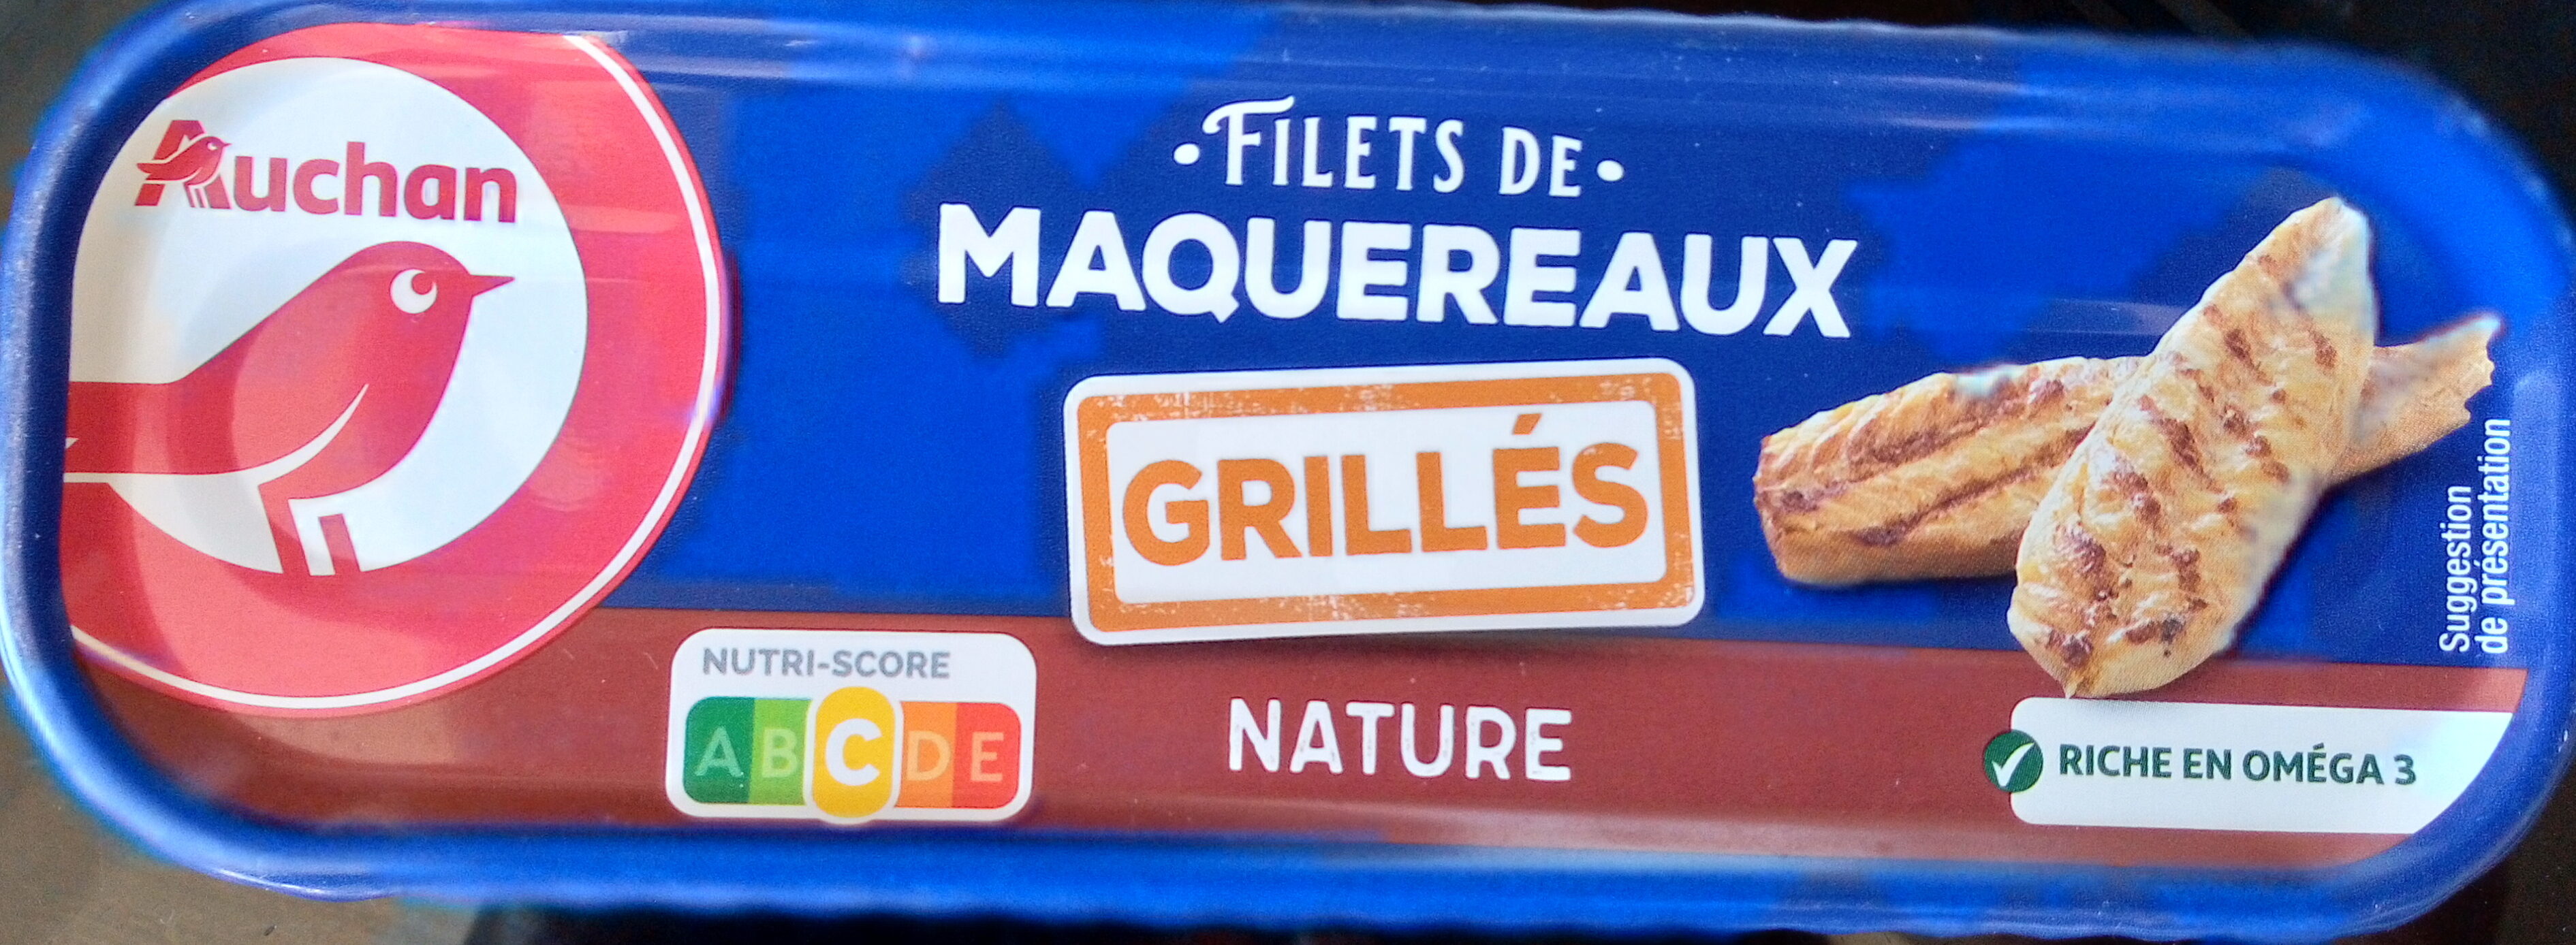 Filets de maquereaux grillés nature - Product - fr